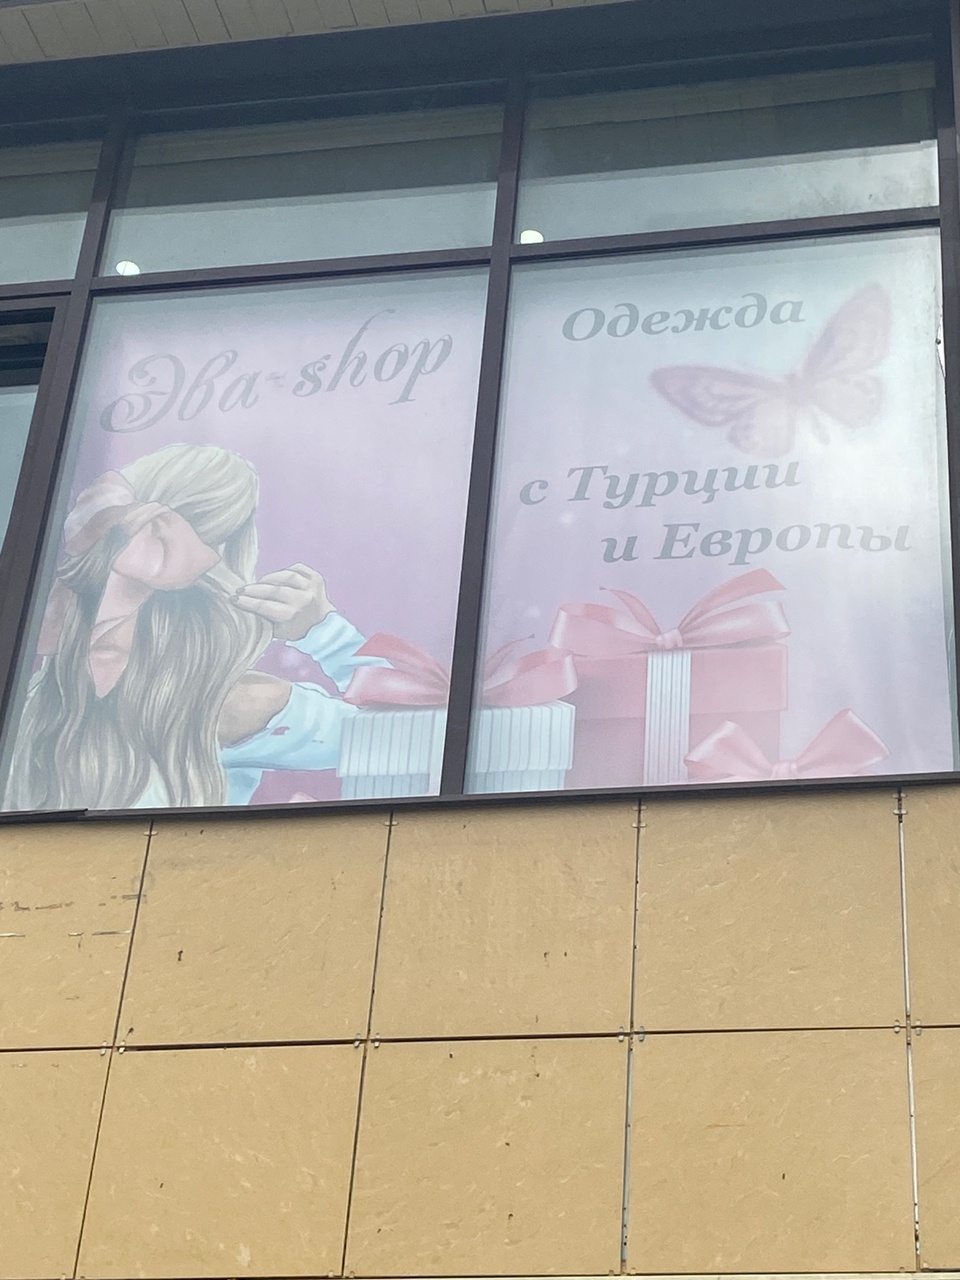 Эва shop - Пятигорск